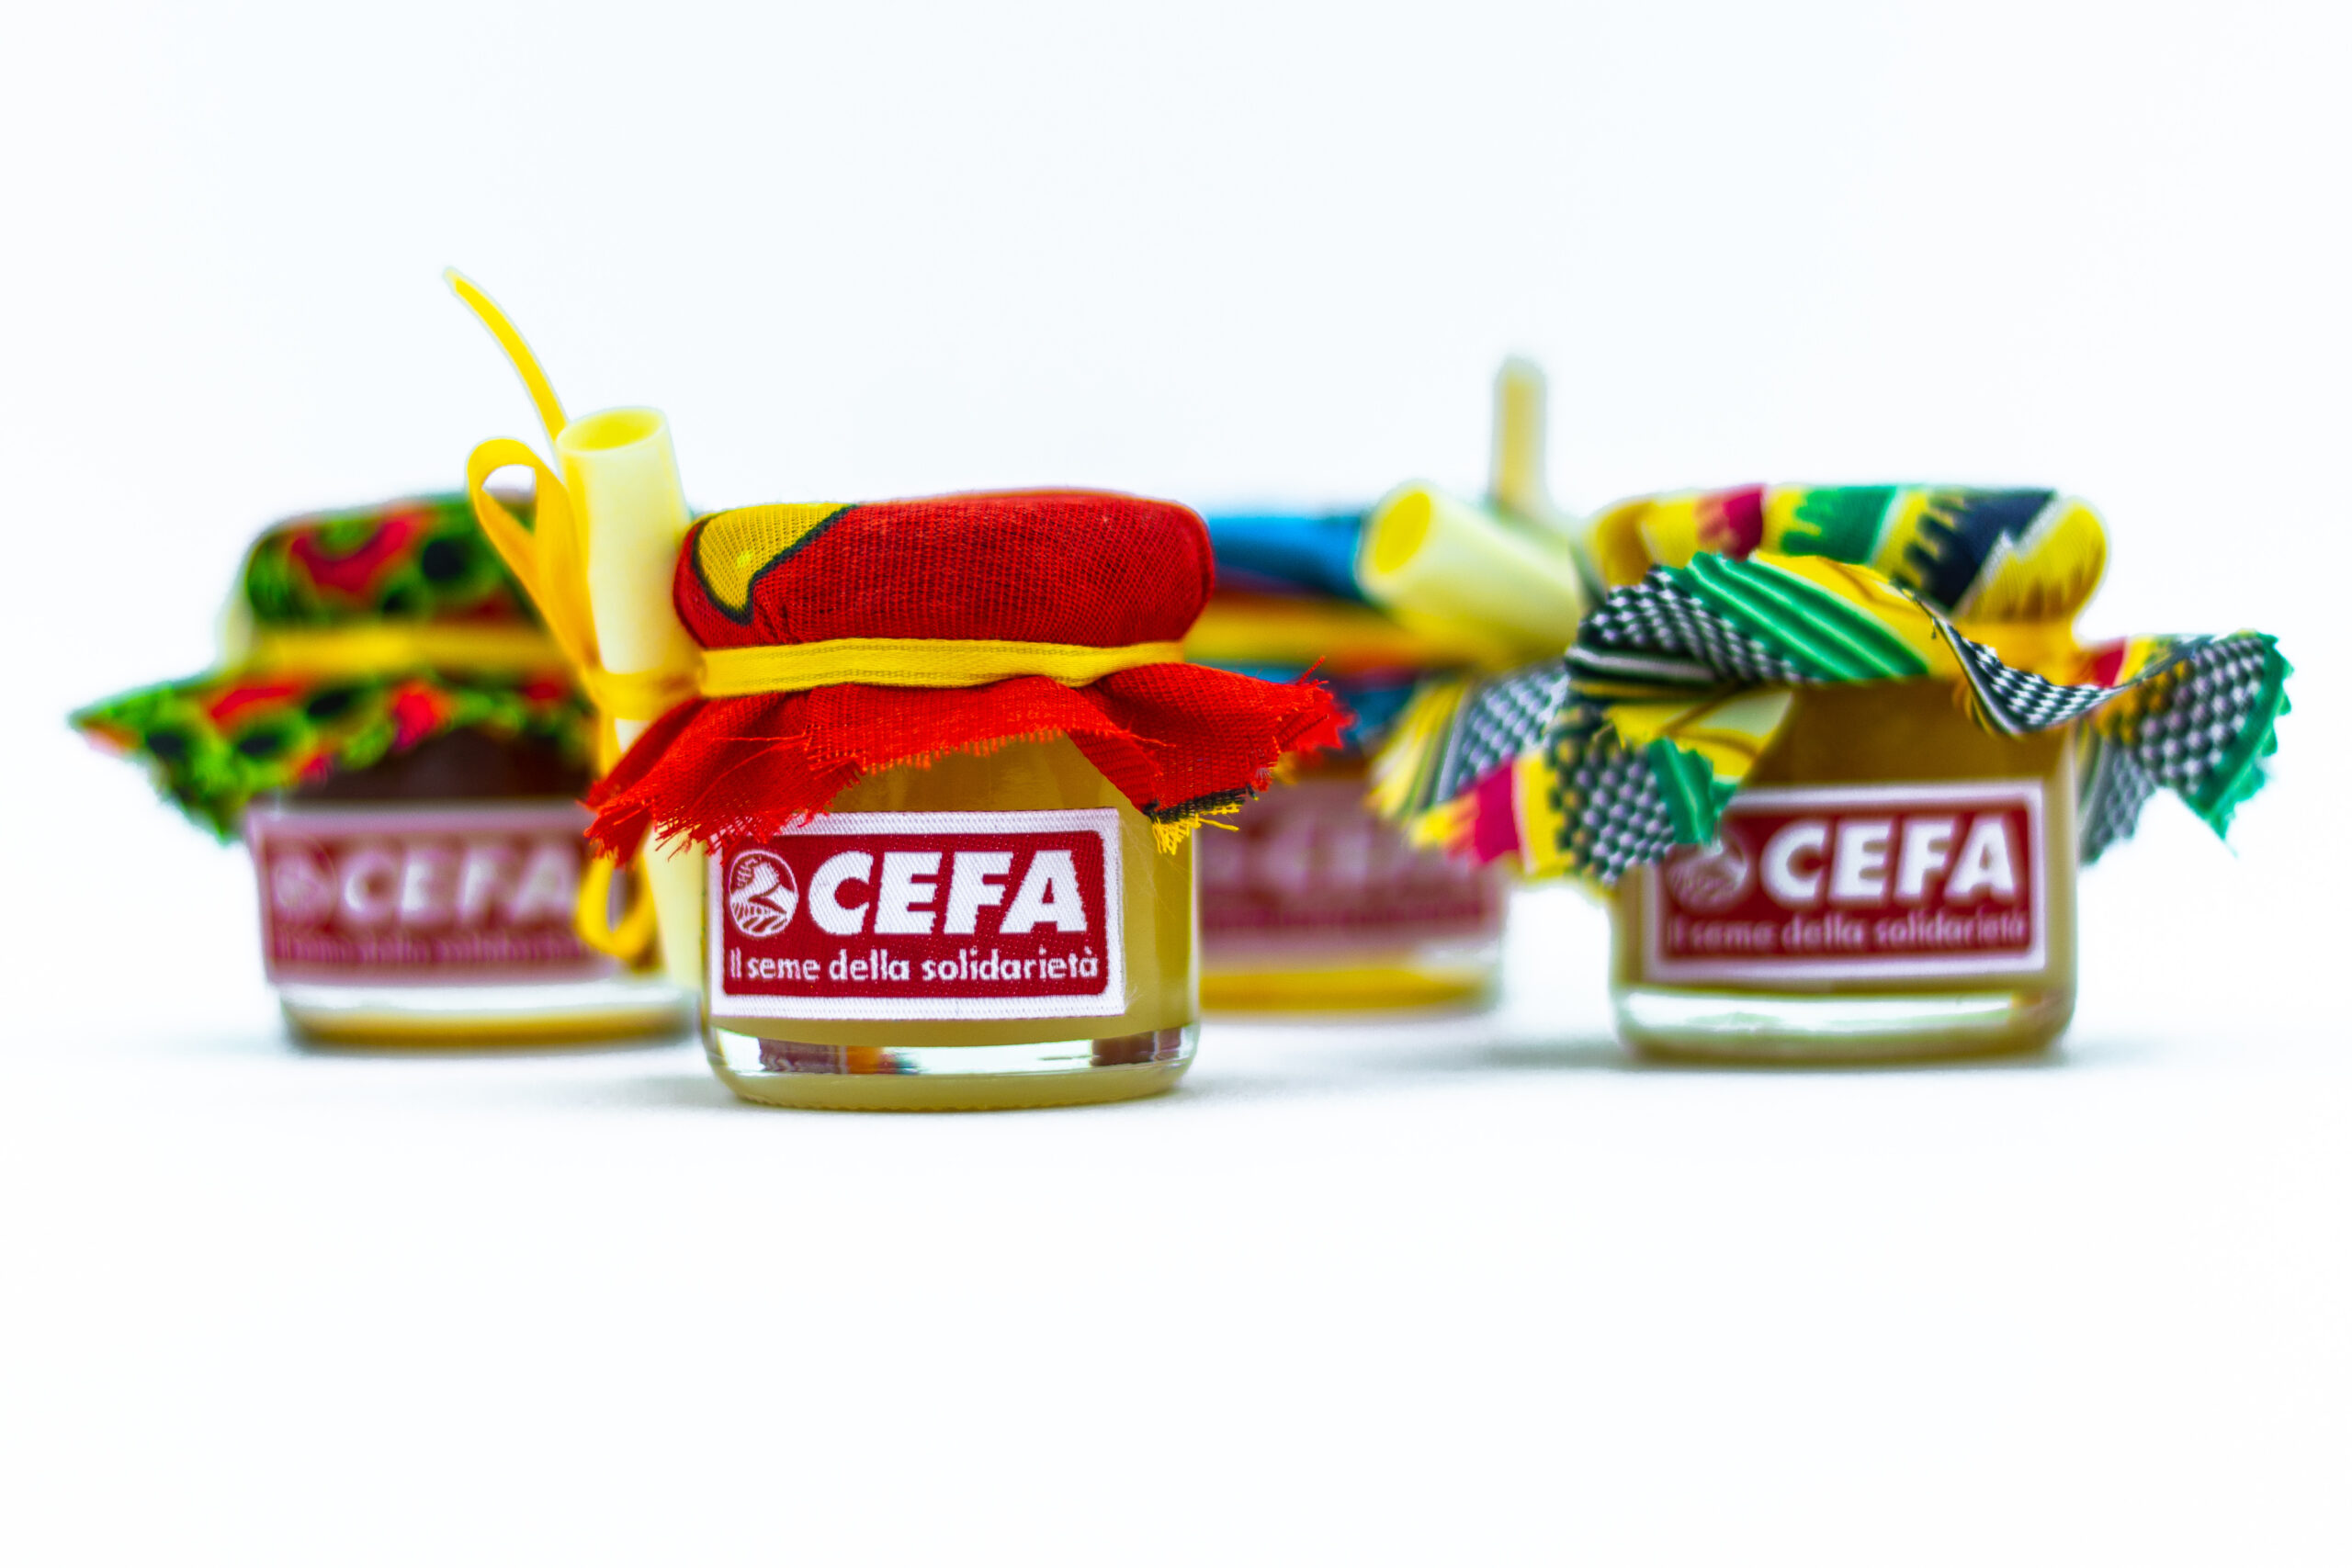 vasetti di miele con copricoperchio in stoffa africana, deliziose bomboniere solidali vivaci e buonissime. Colori e gusti di miele assortiti